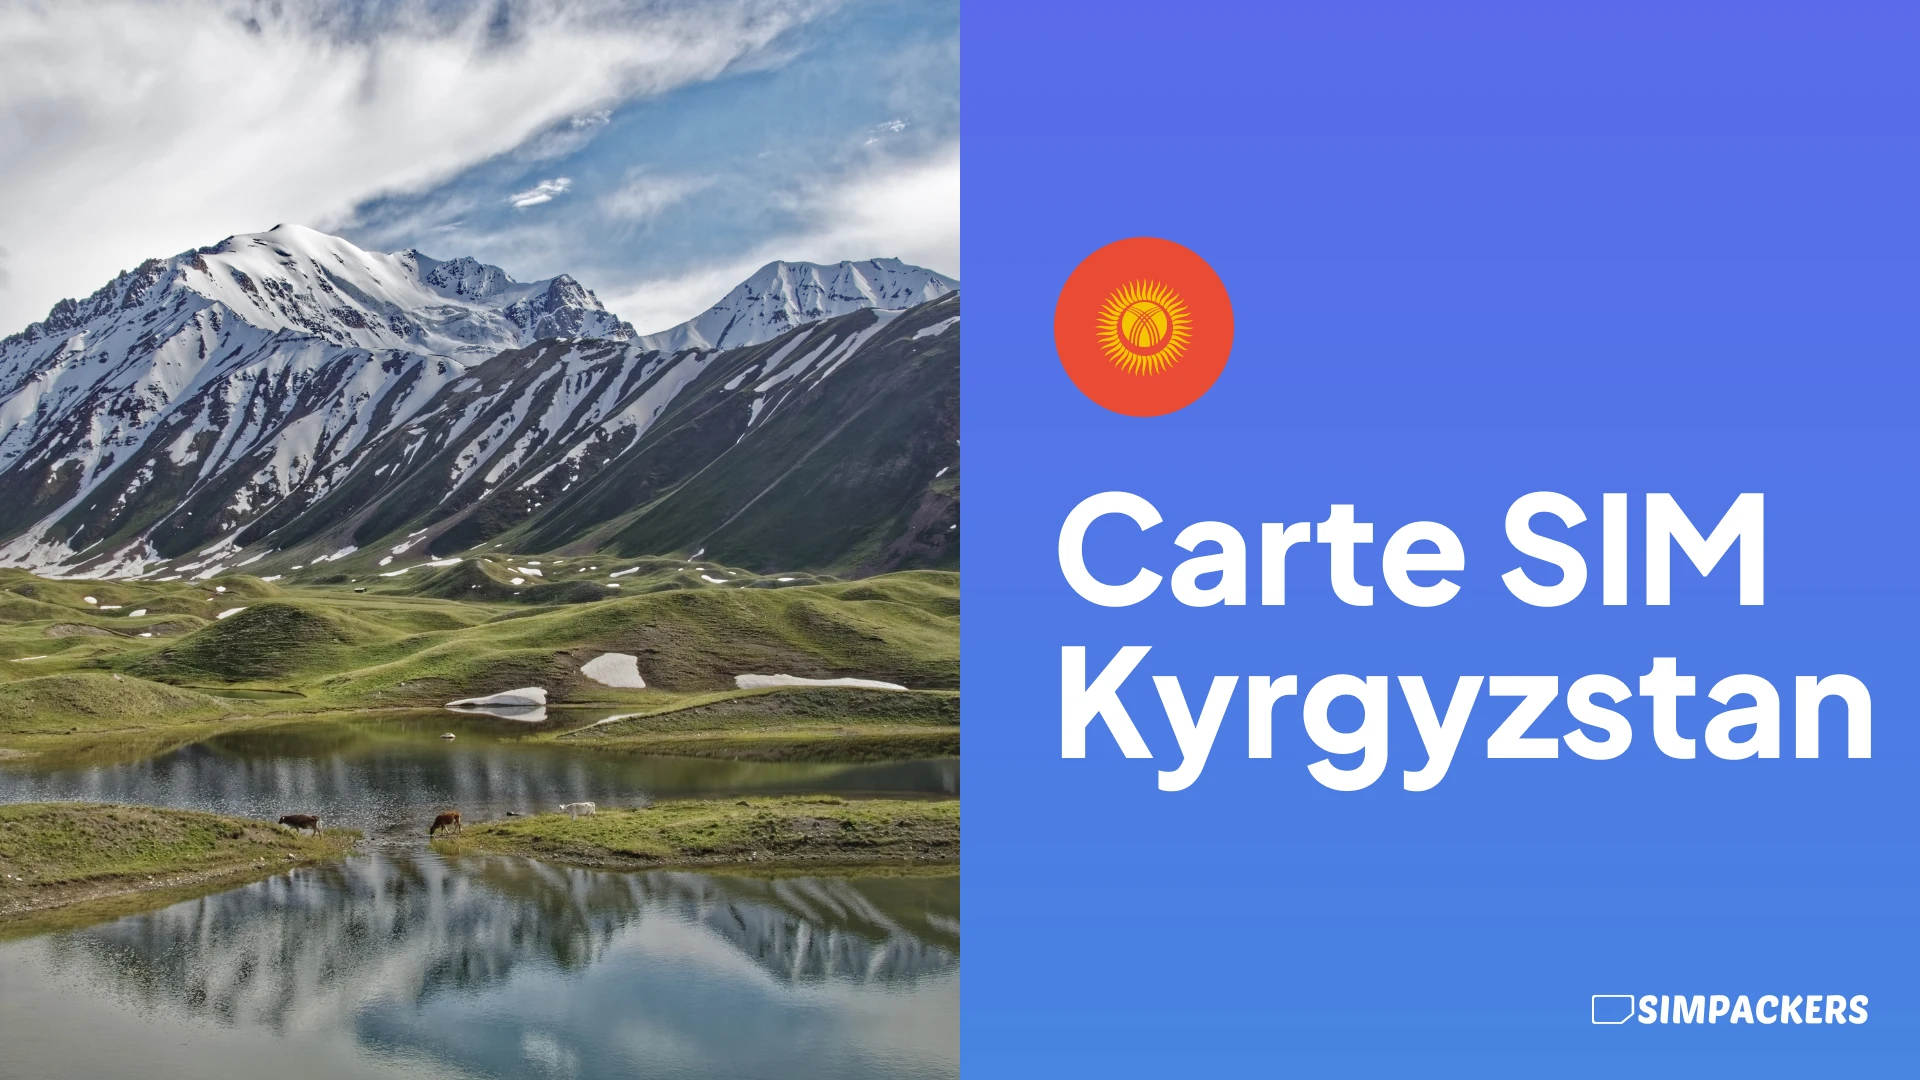 FR/FEATURED_IMAGES/carte-sim-kyrgyzstan.webp